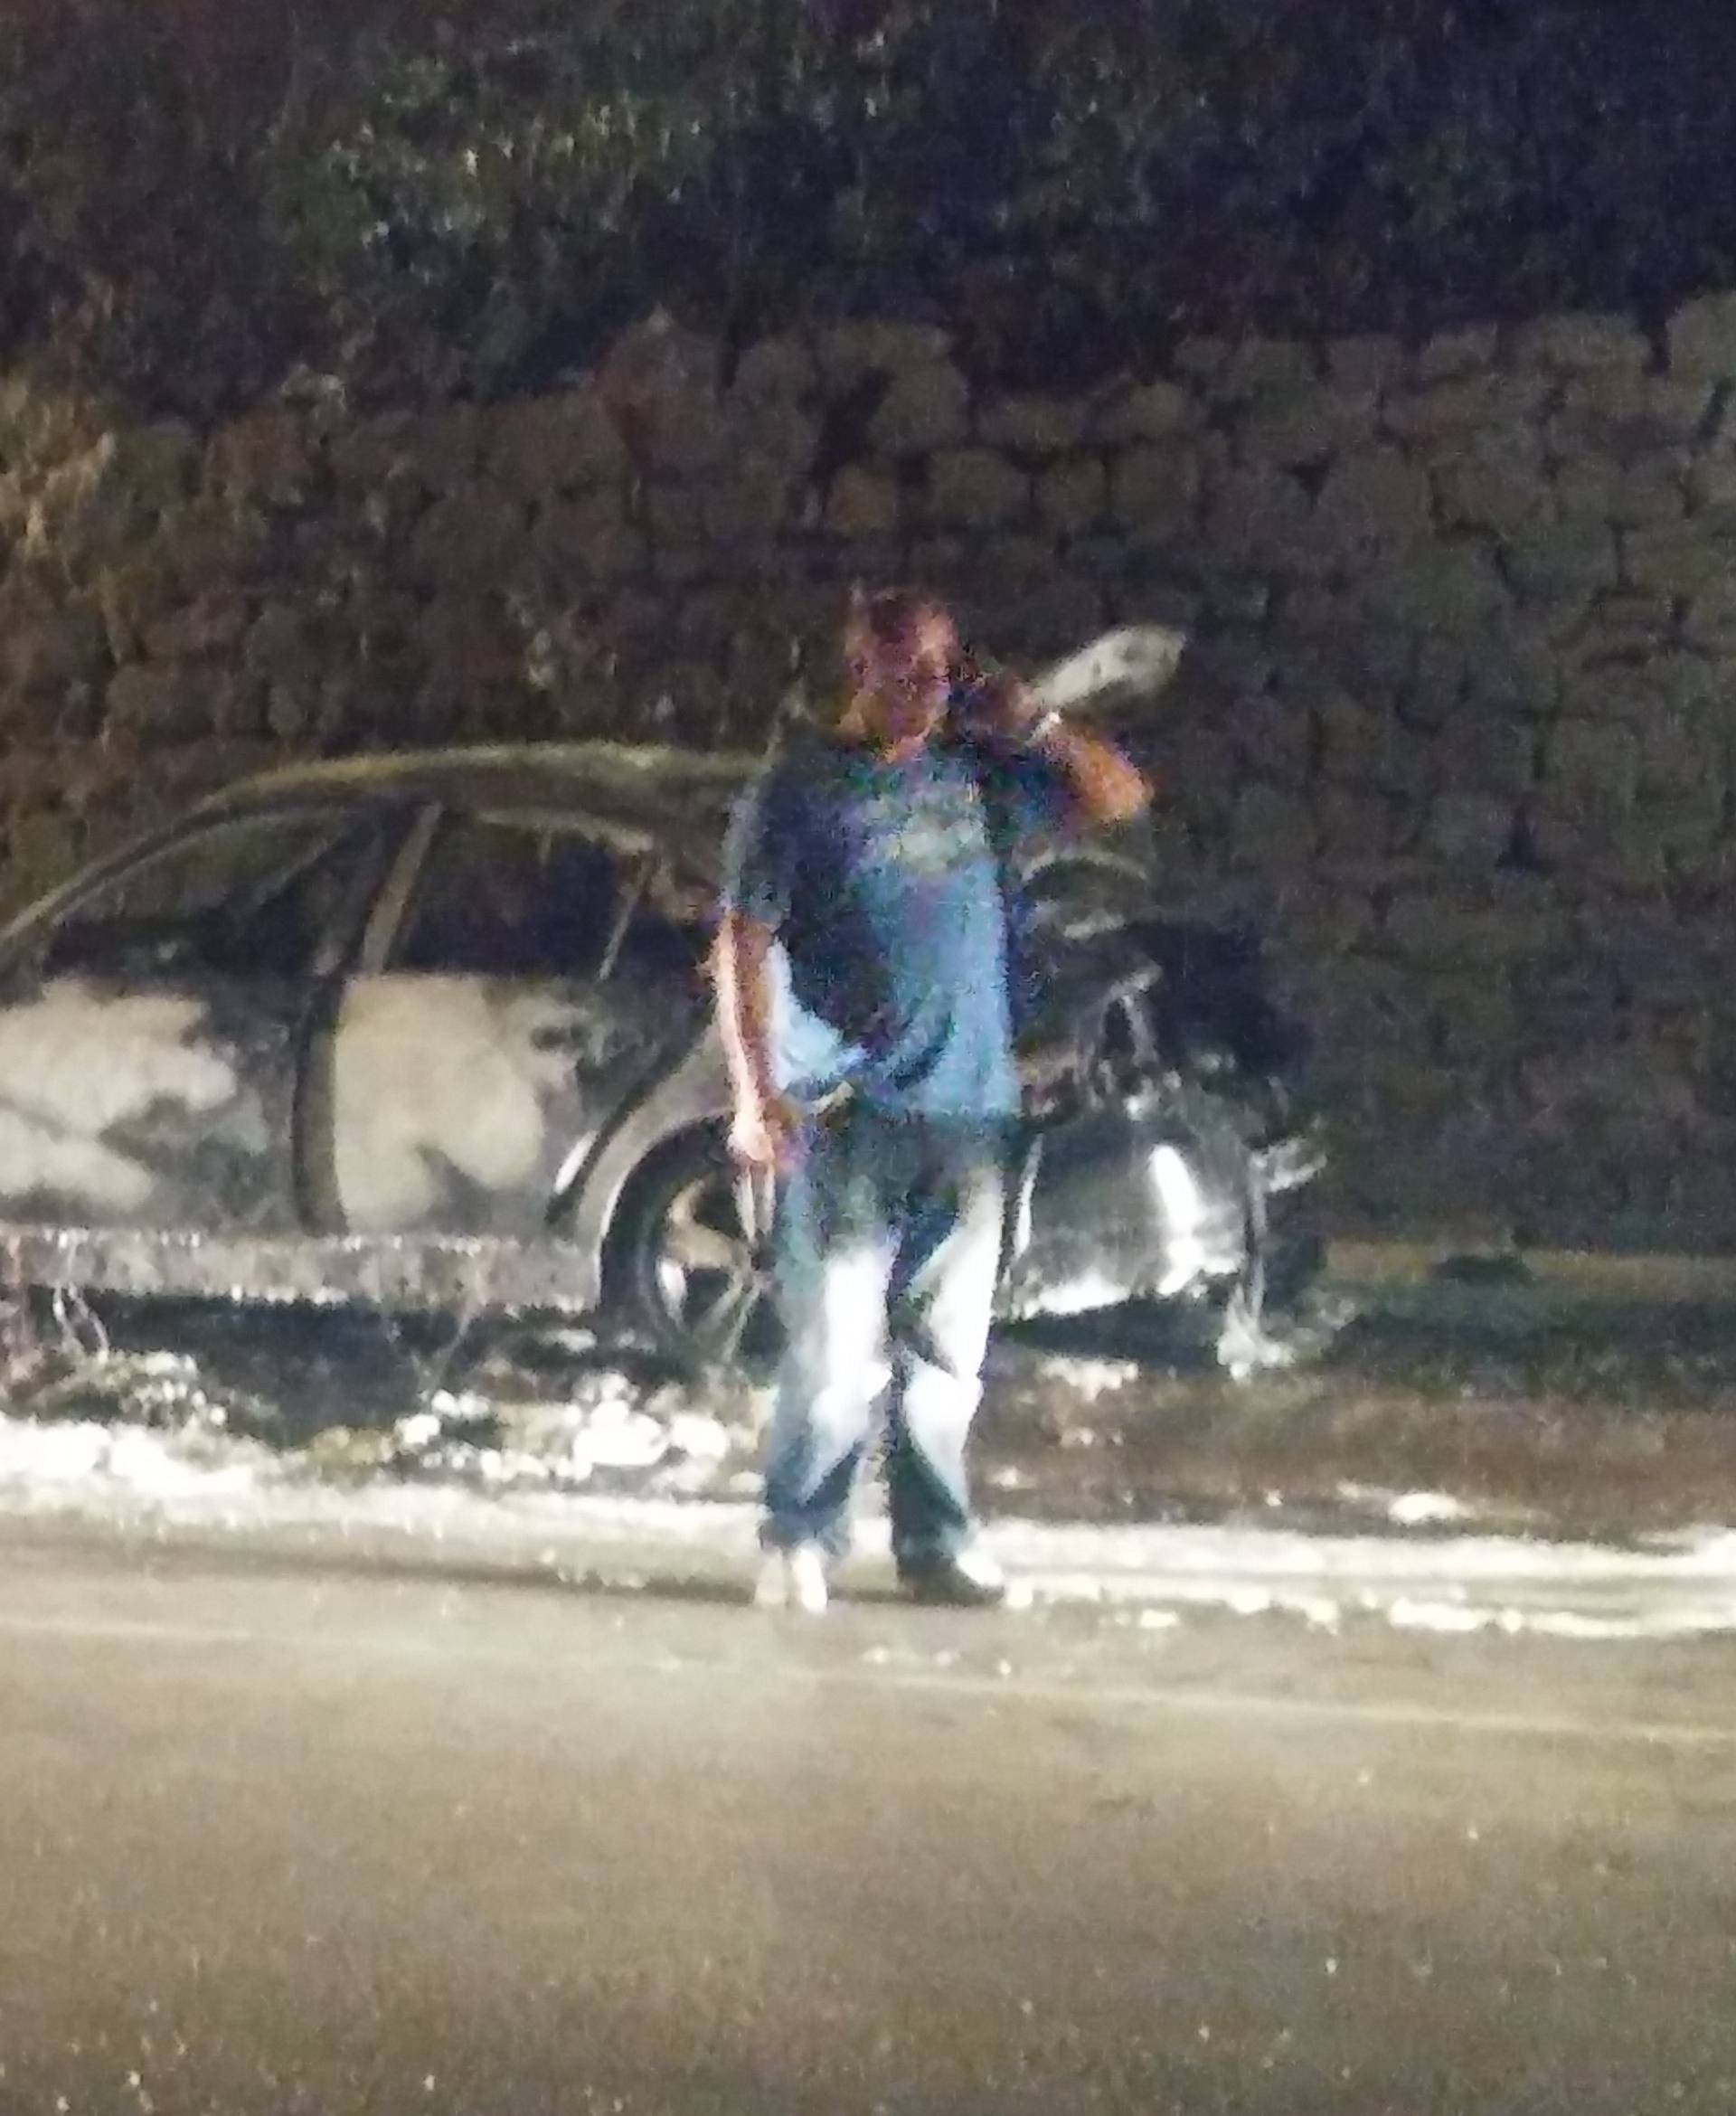 Napali bugarske navijače usred Zadra i zapalili im automobil